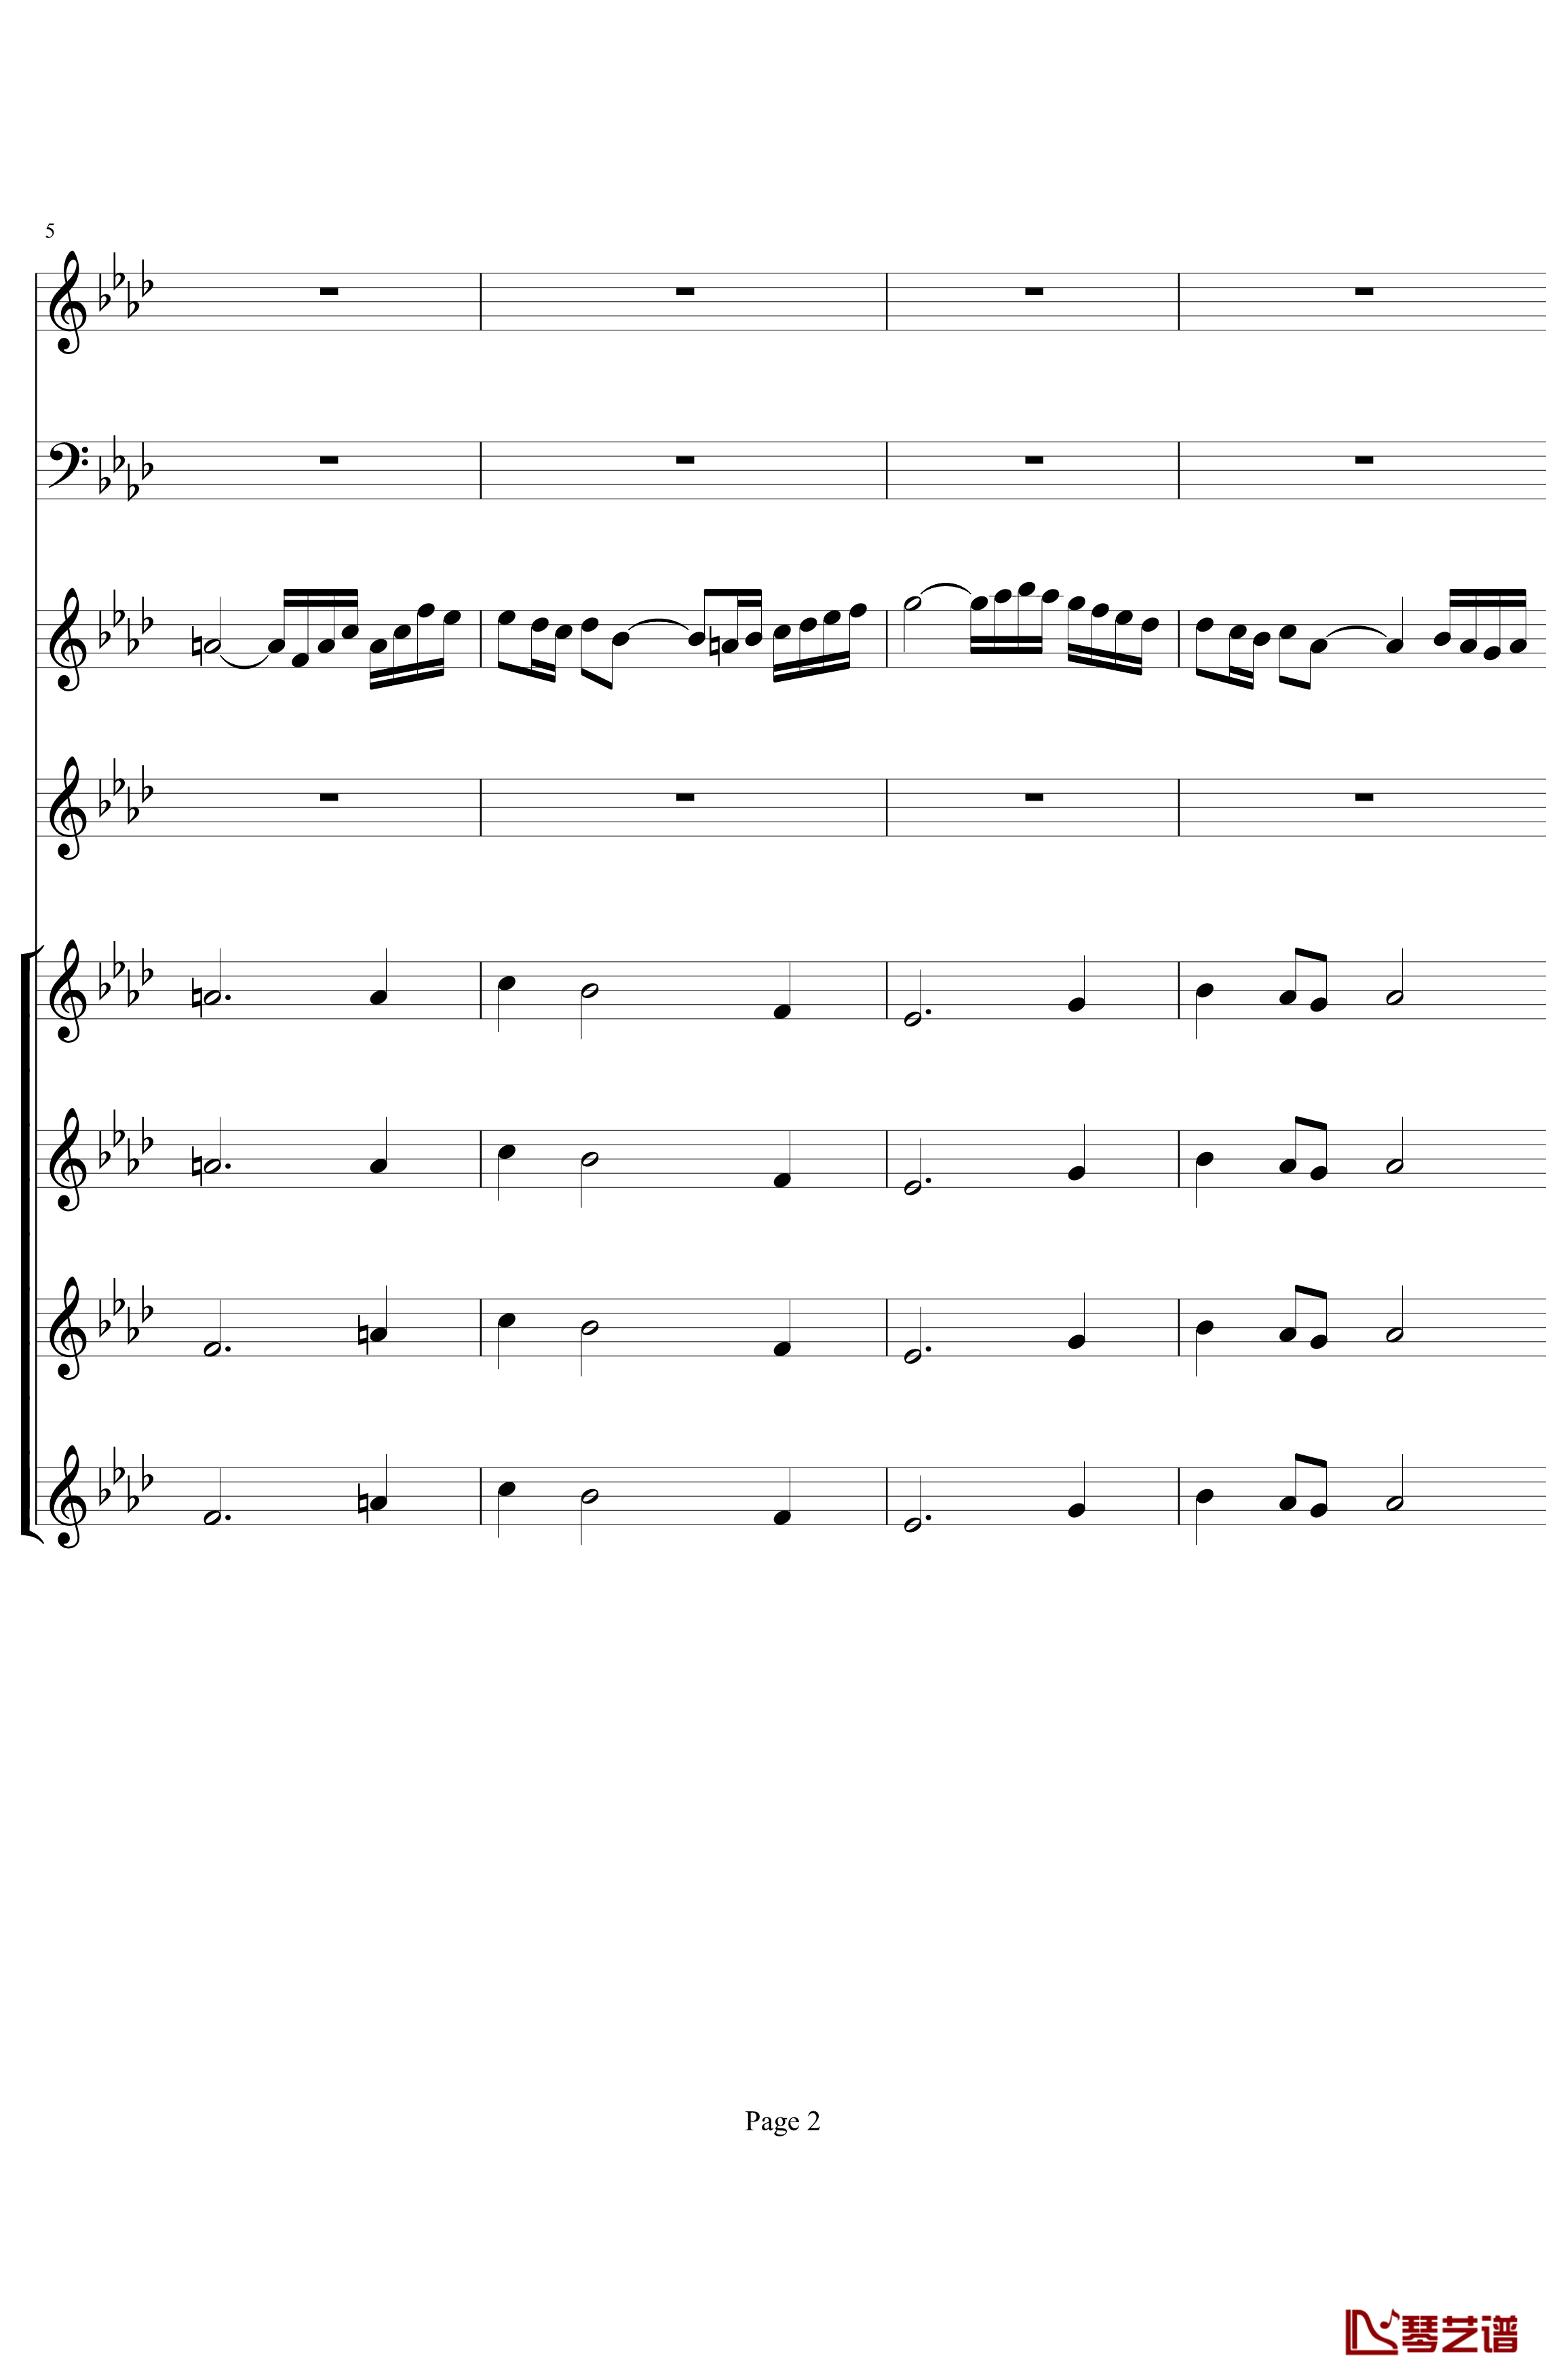 双童声协奏曲钢琴谱-Concerto Pour Deux Voix-合唱版-Saint-Preux2